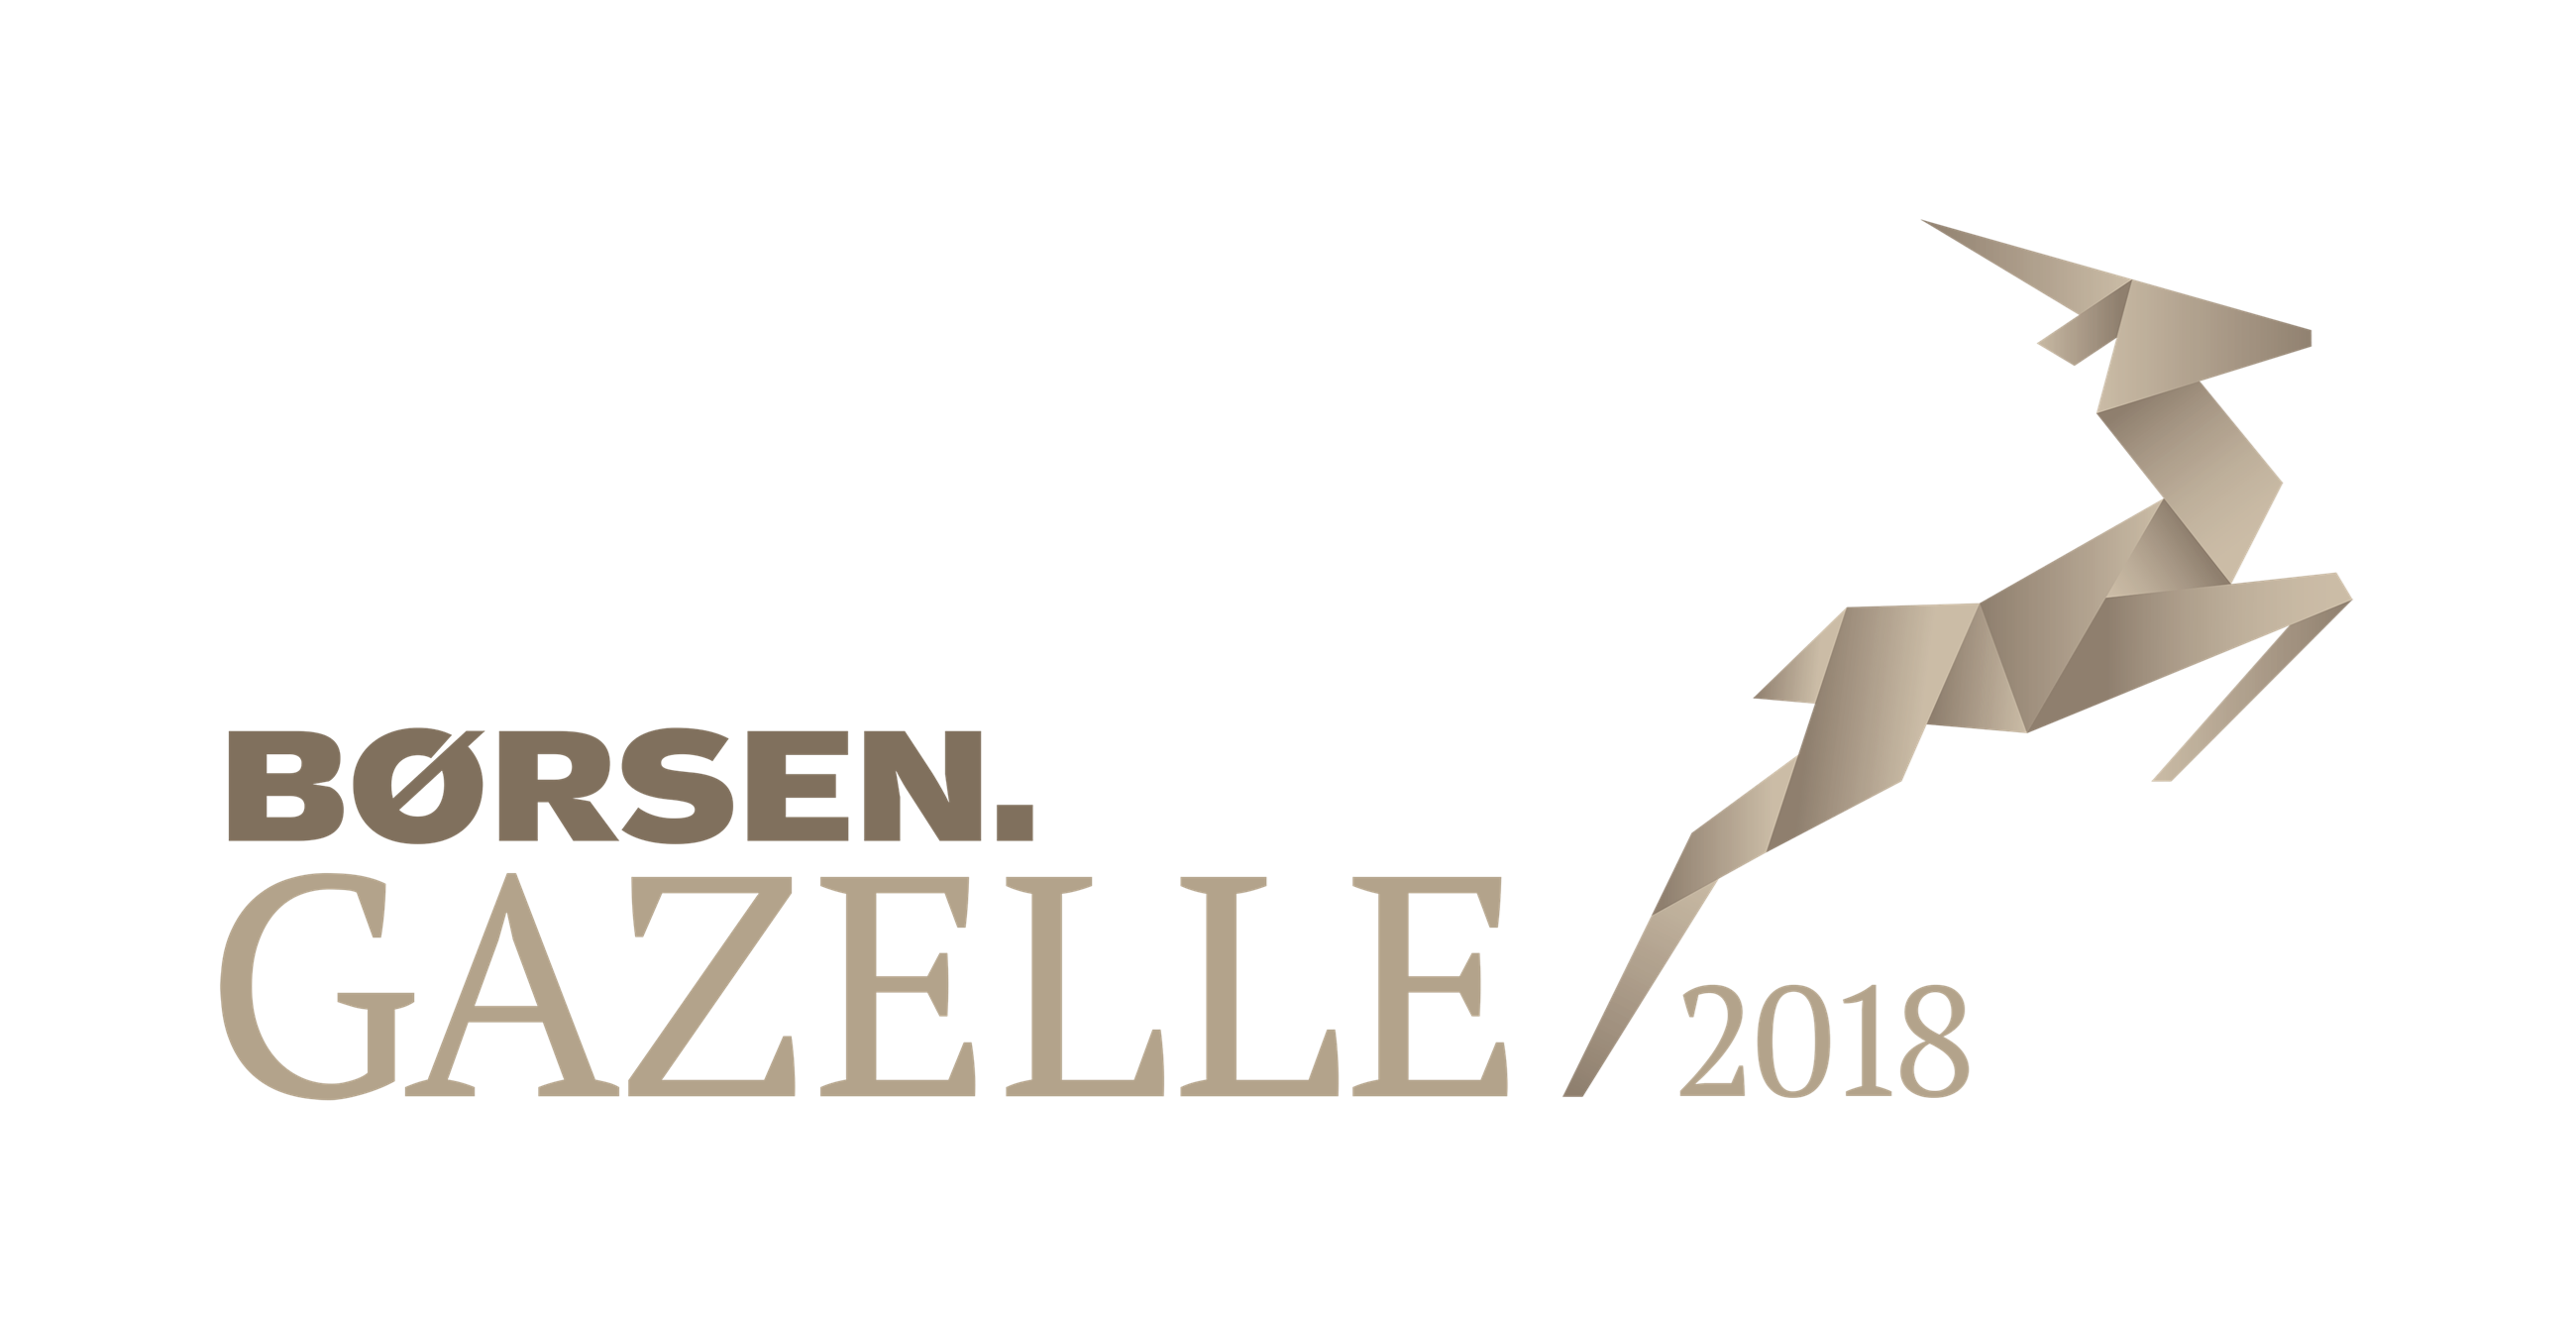 boersen-gazelle-2018_rgb_negativ